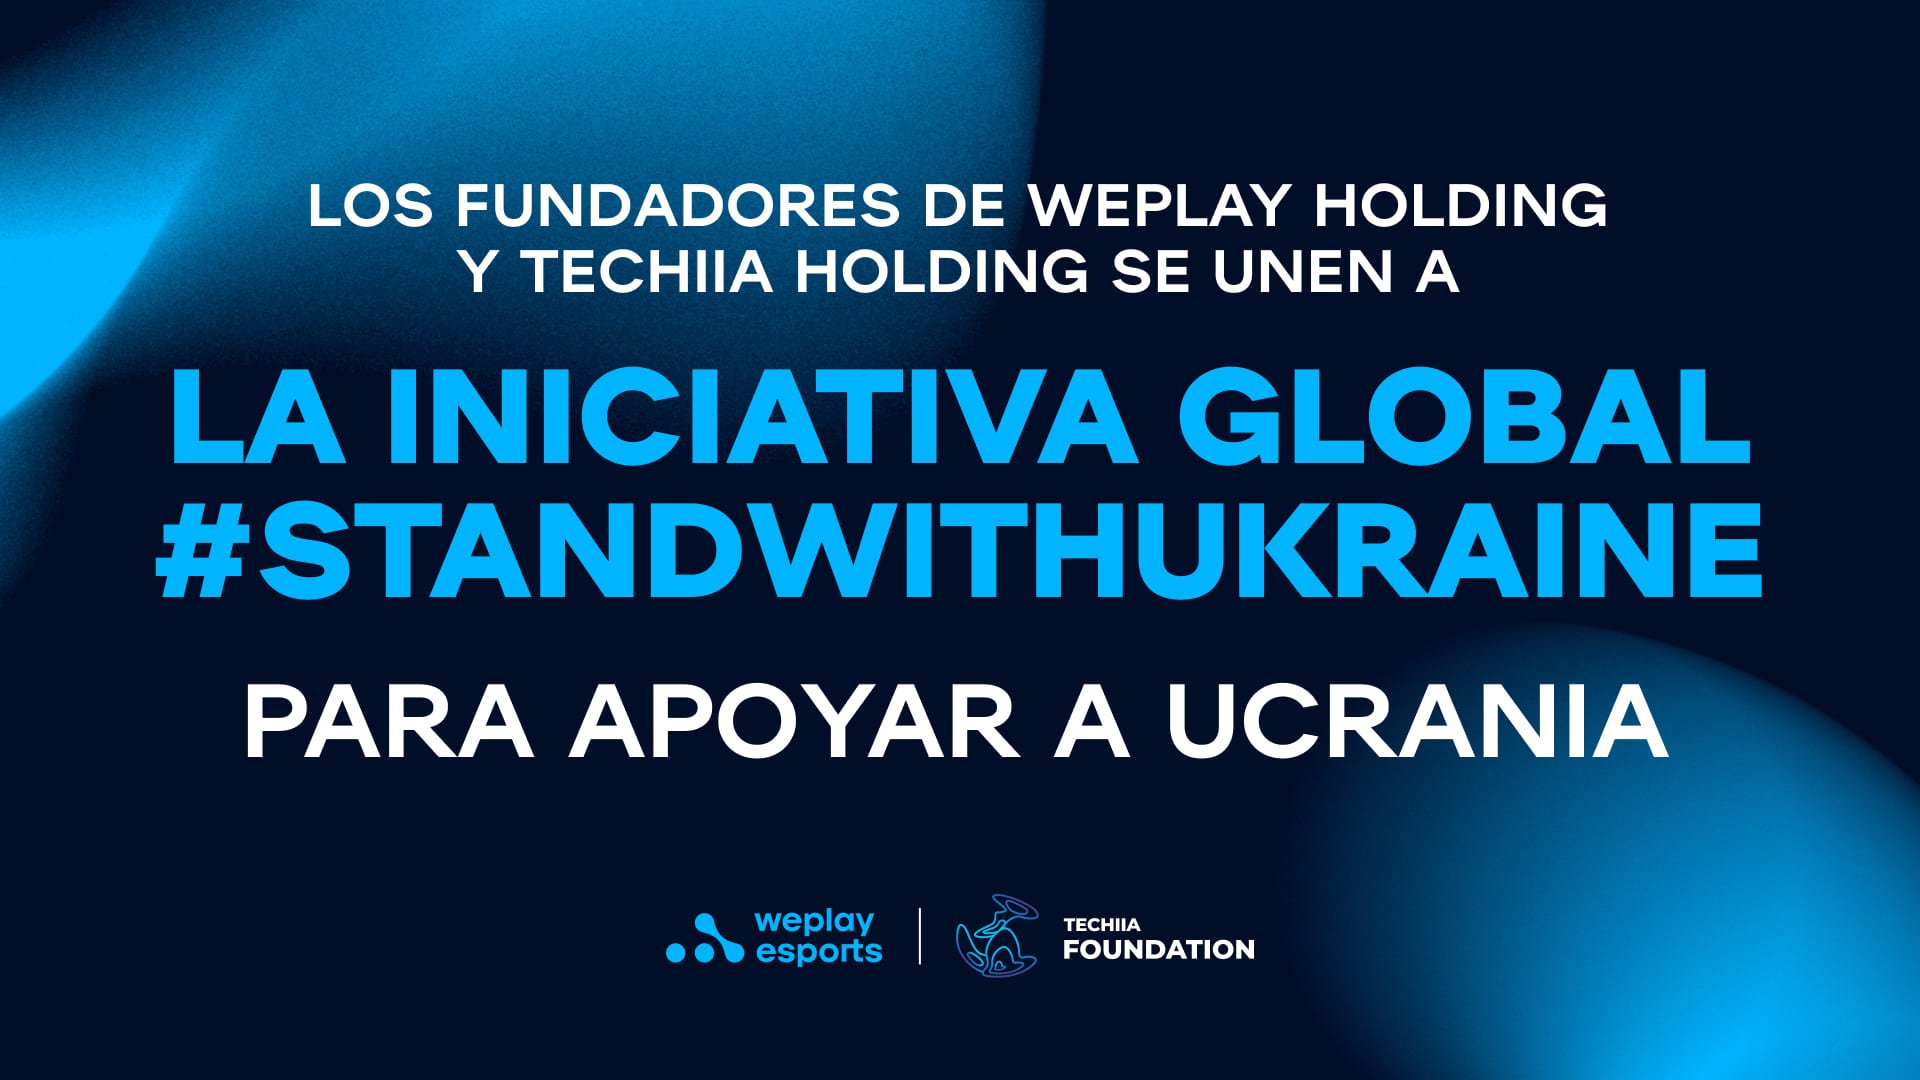 Los fundadores de WePlay Holding y TECHIIA Holding se unen a la iniciativa global #StandwithUkraine para apoyar a Ucrania. Imagen: WePlay Holding